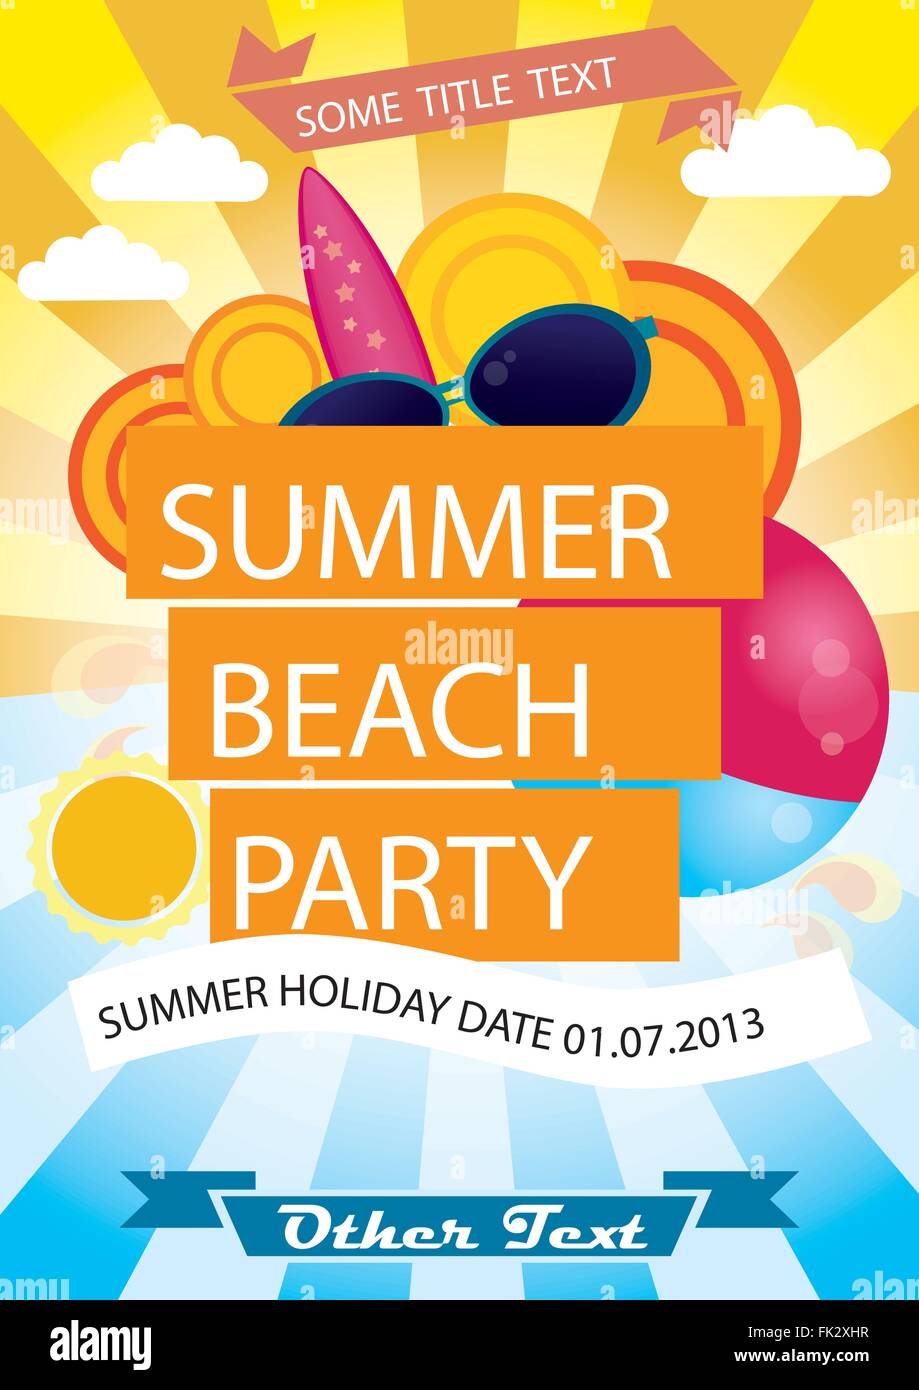 Summer beach party vector poster Stock Vector